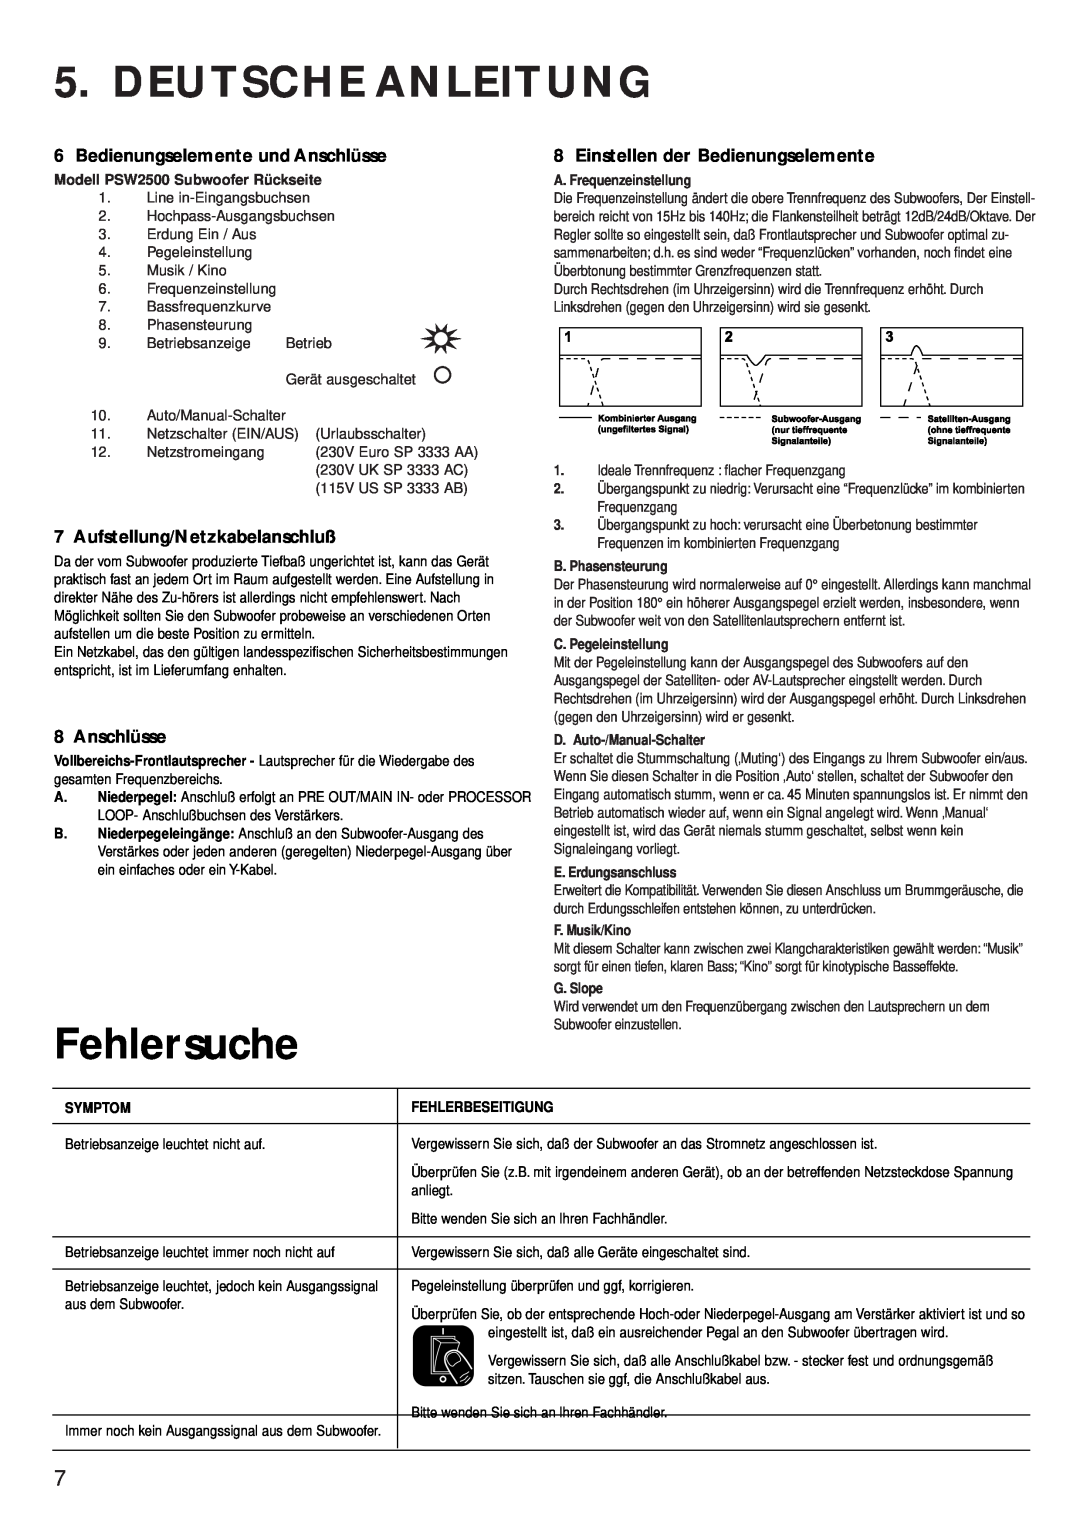 KEF Audio PSW 2500 Deutsche Anleitung, Fehlersuche, Bedienungselemente und Anschlüsse, Aufstellung/Netzkabelanschluß 